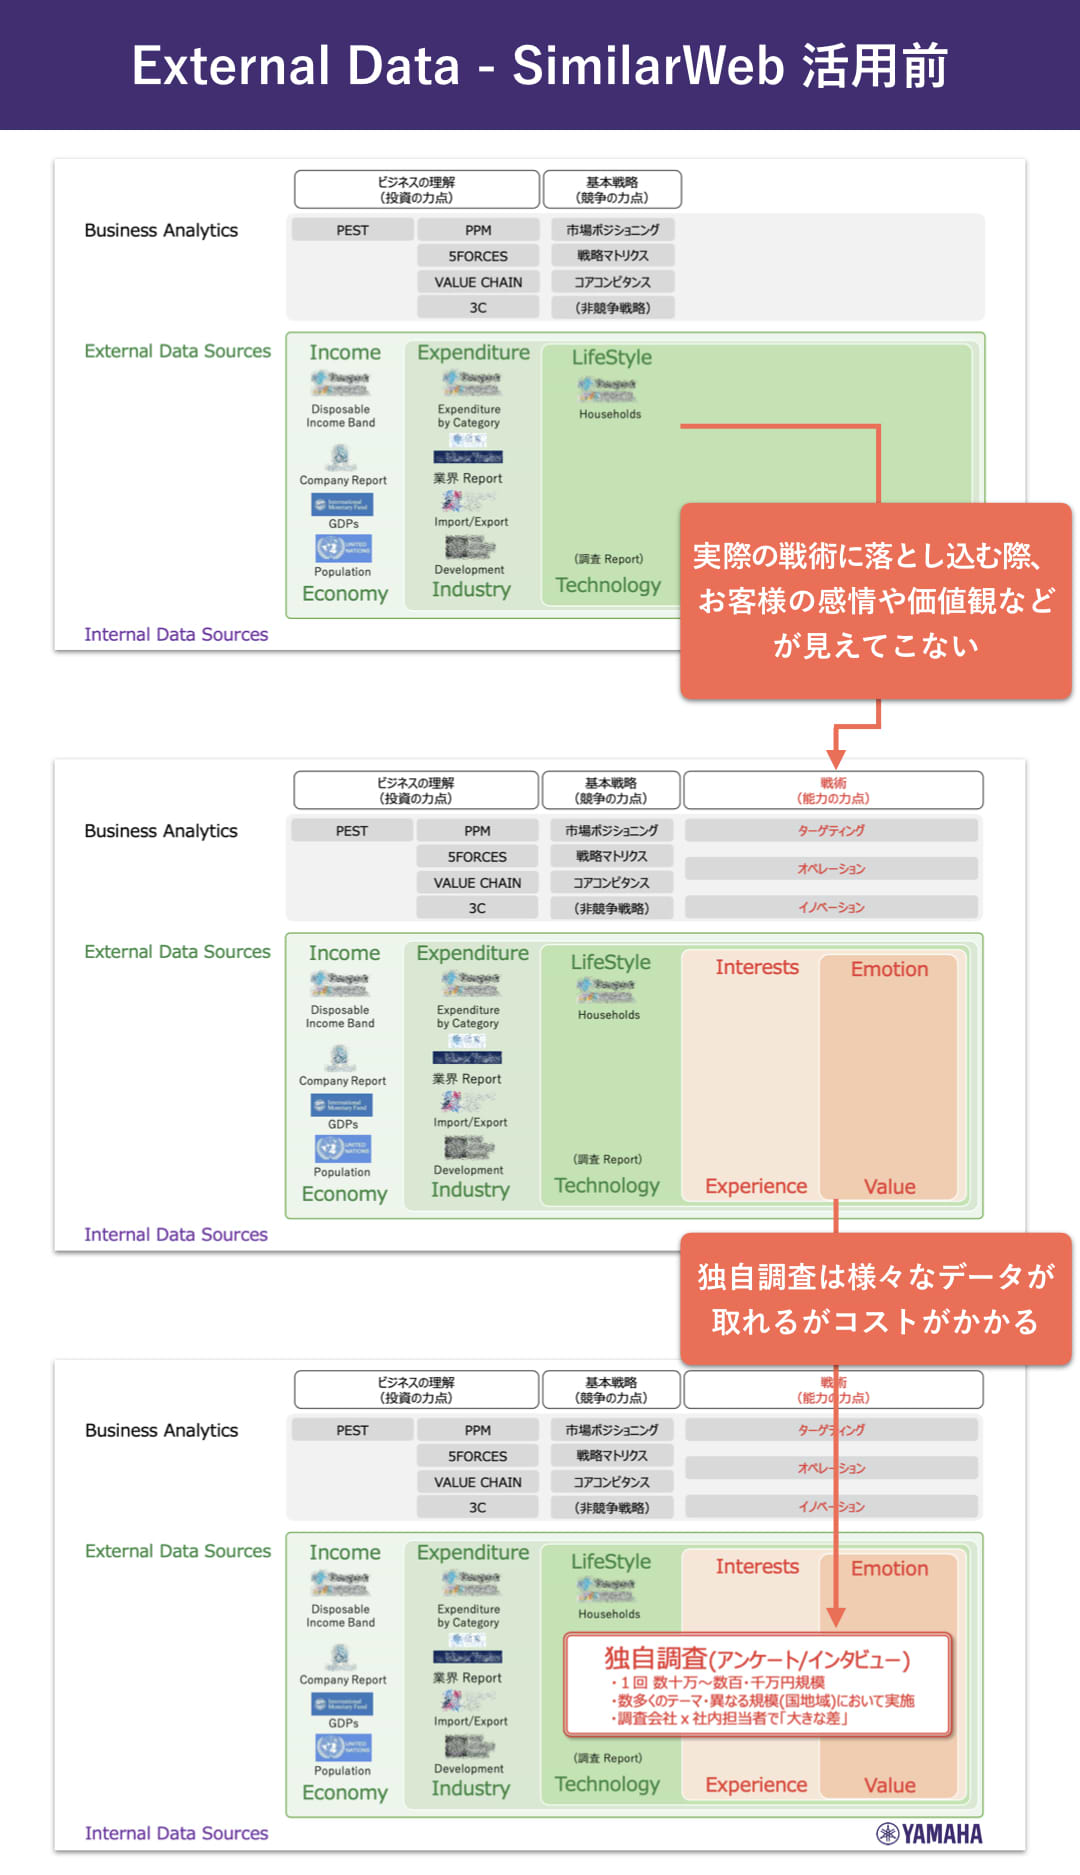 ヤマハ株式会社：濱崎司_External Data - SimilarWeb 活用前